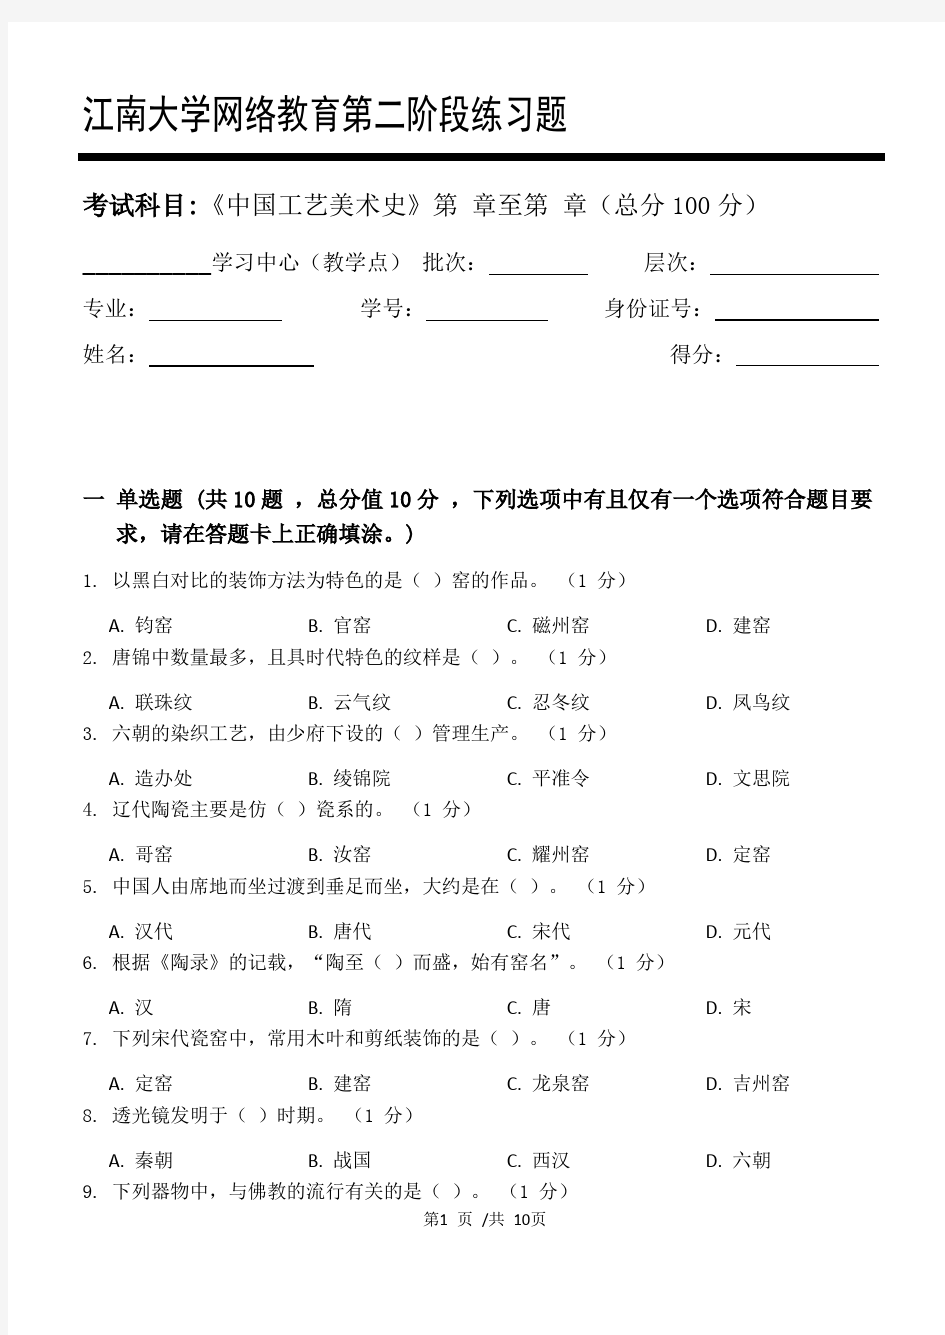 中国工艺美术史第2阶段练习题江大考试题库及答案一科共有三个阶段,这是其中一个阶段。答案在最